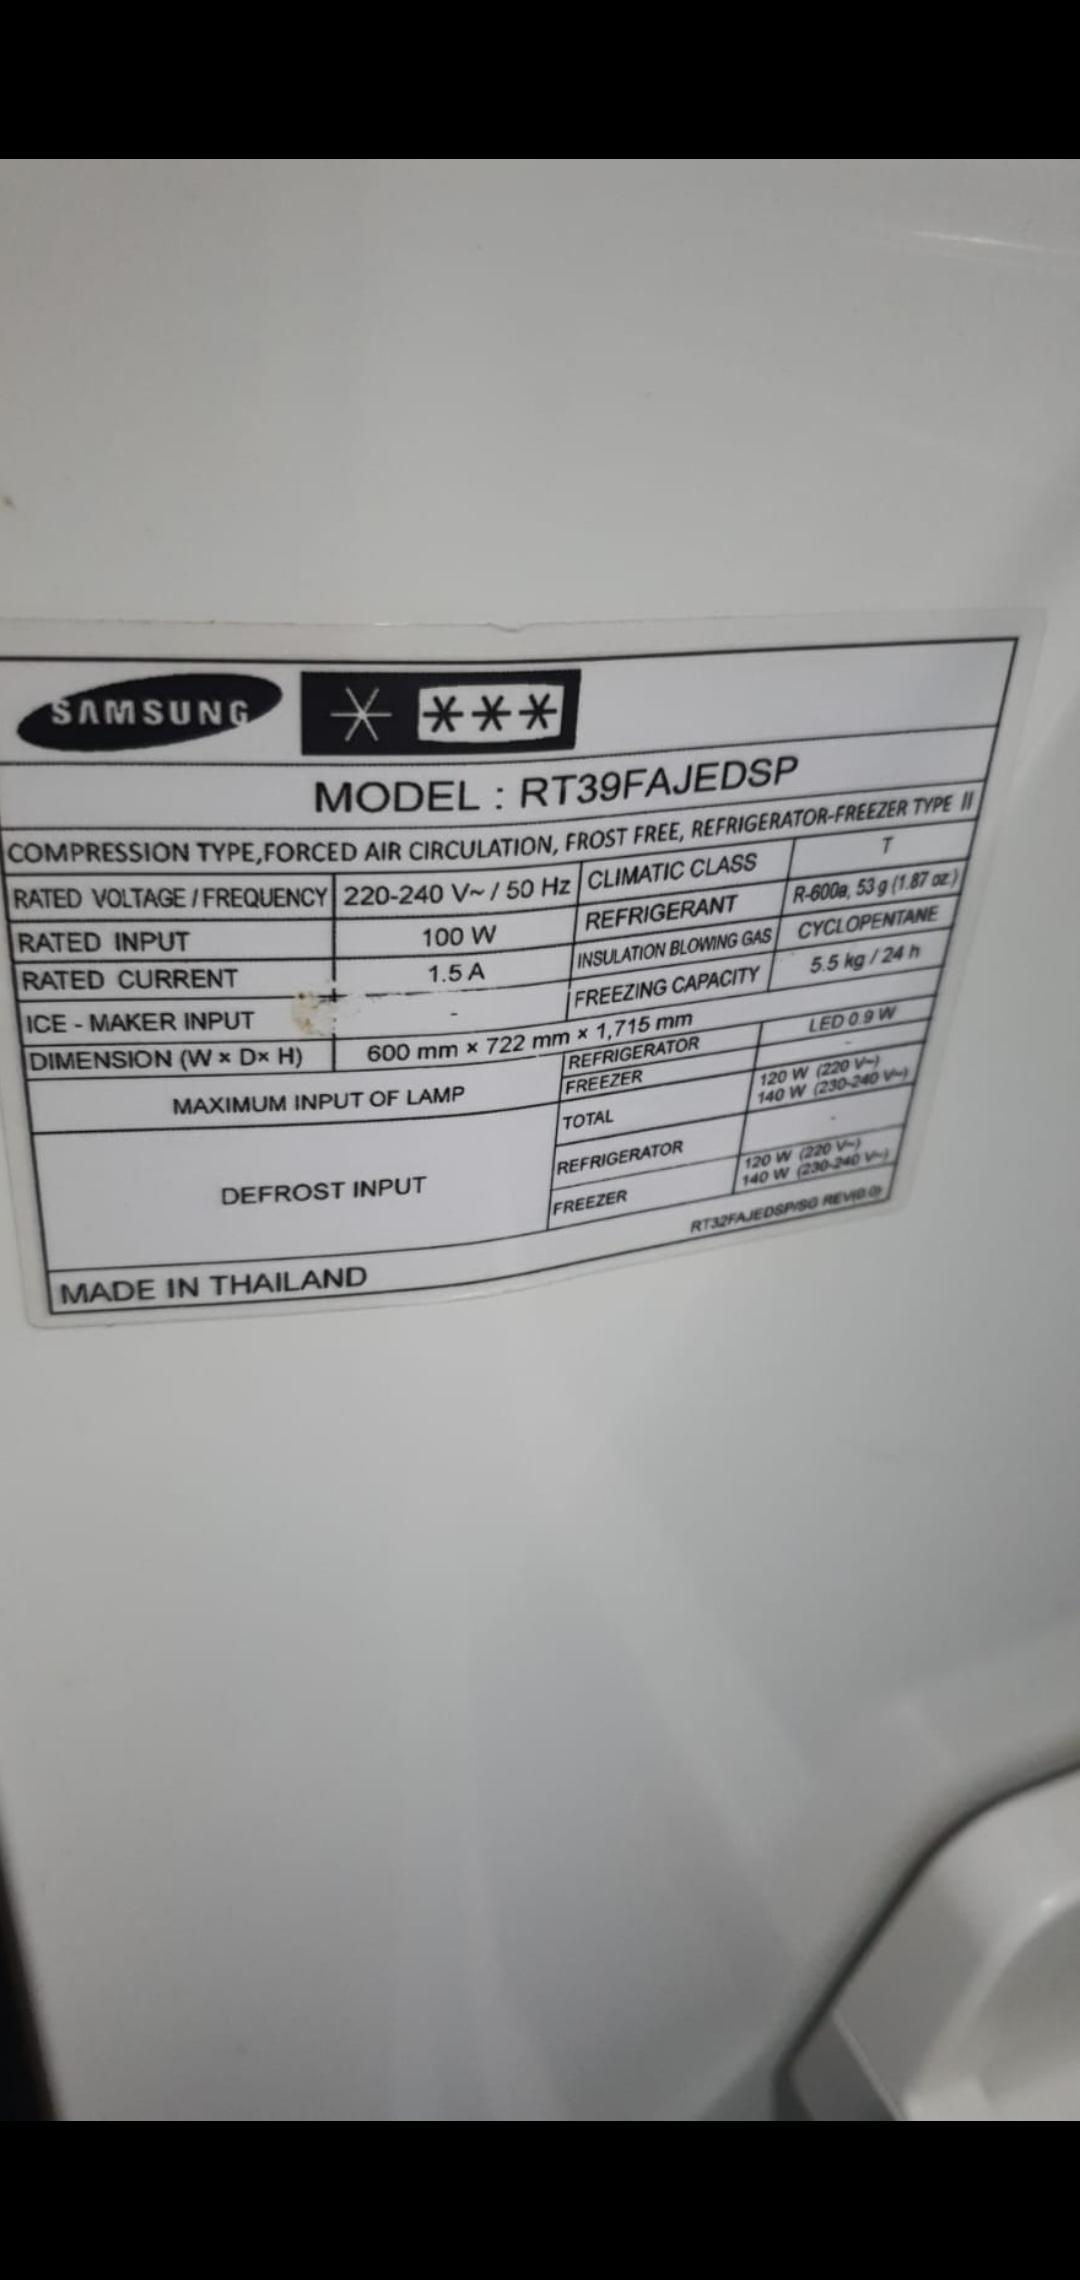 Mon réfrigérateur Samsung ne refroidit pas après une coupure de courant.